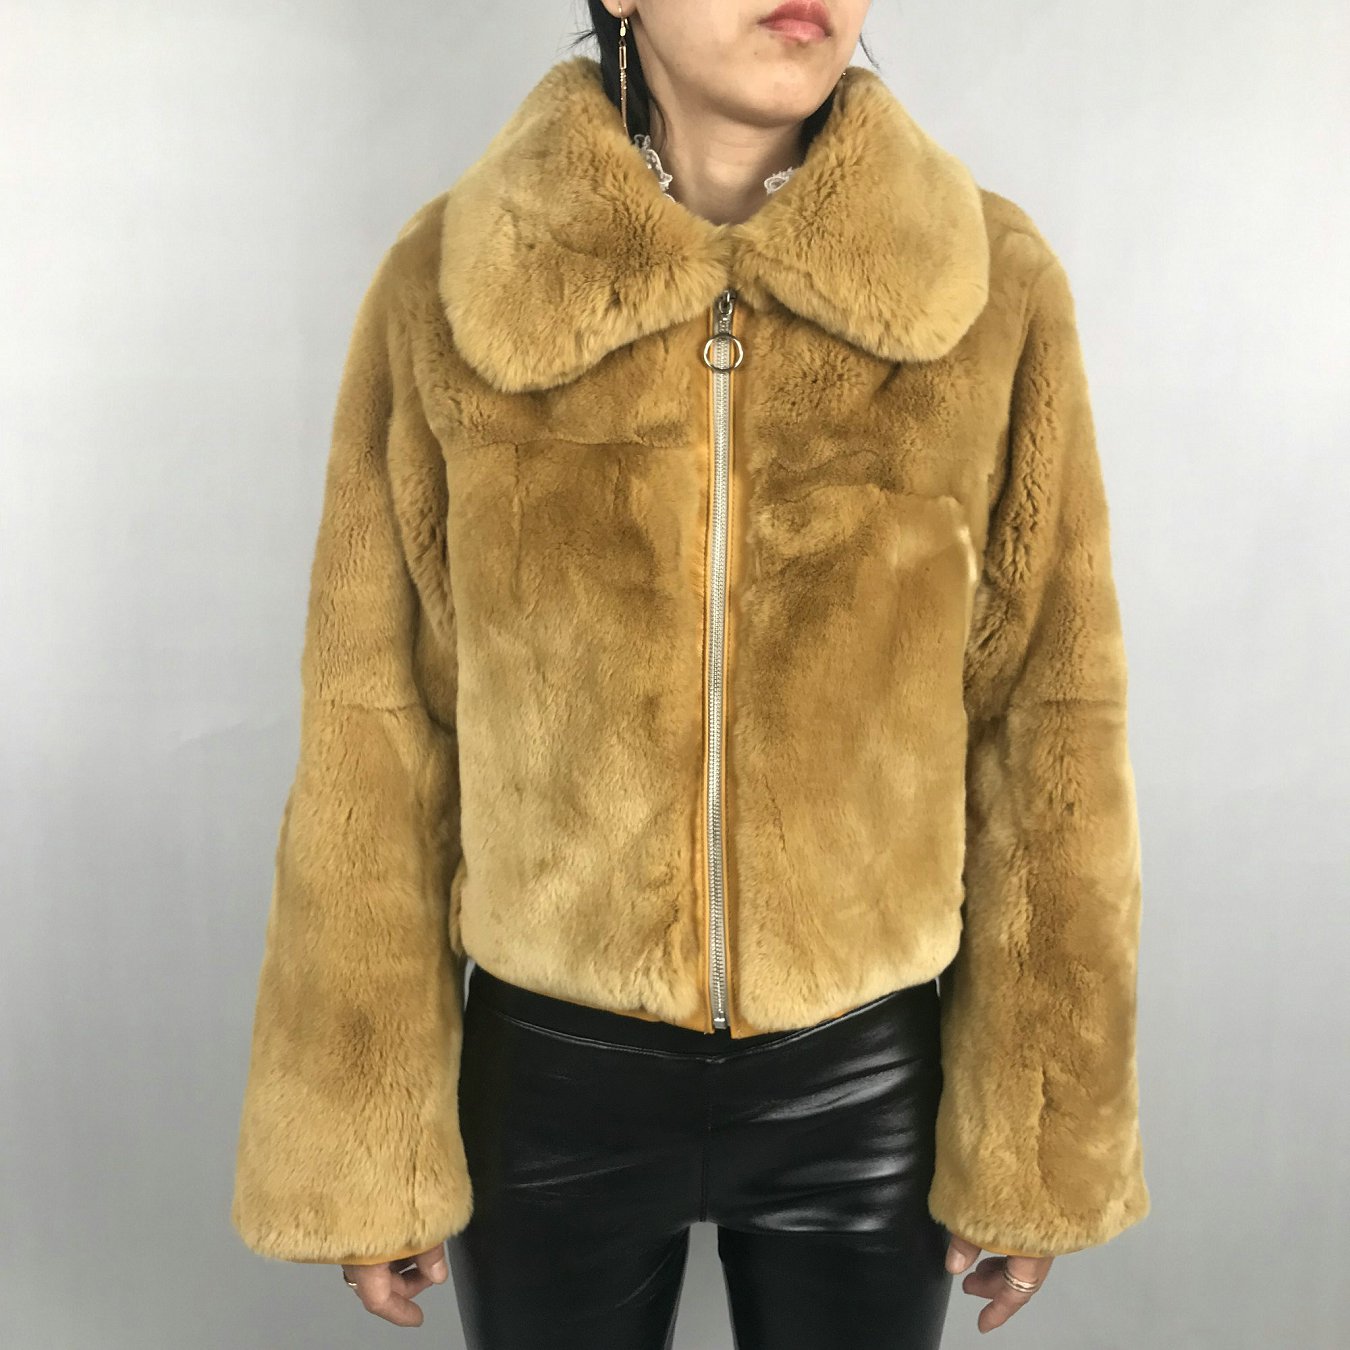 HG7374 giacca di pelliccia vera invernale personalizzata maniche lunghe giacca di pelliccia di coniglio rex genuina donna